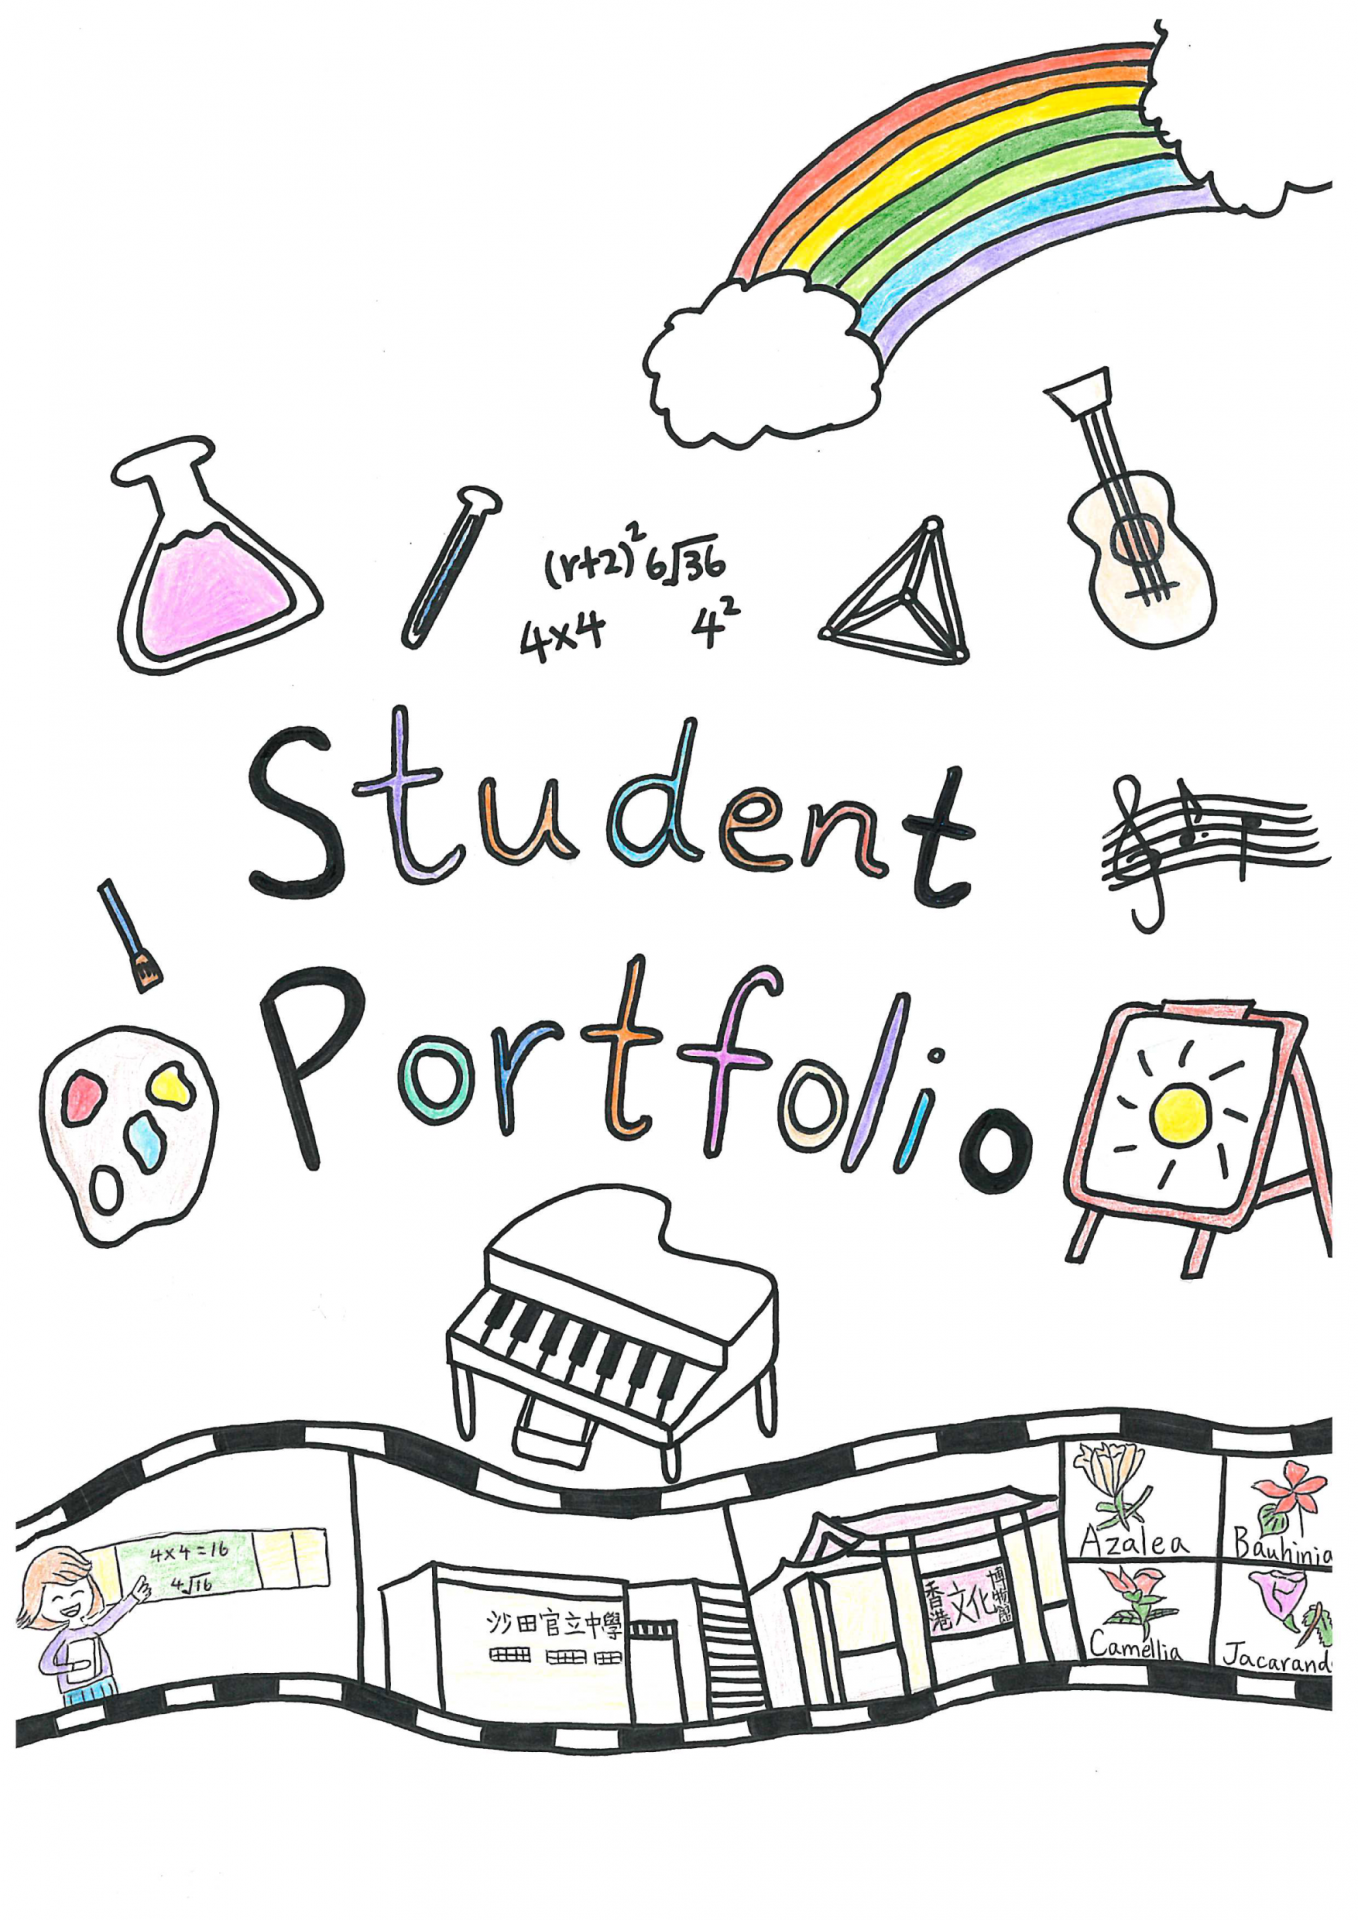 Interior Design Student Portfolio Cover